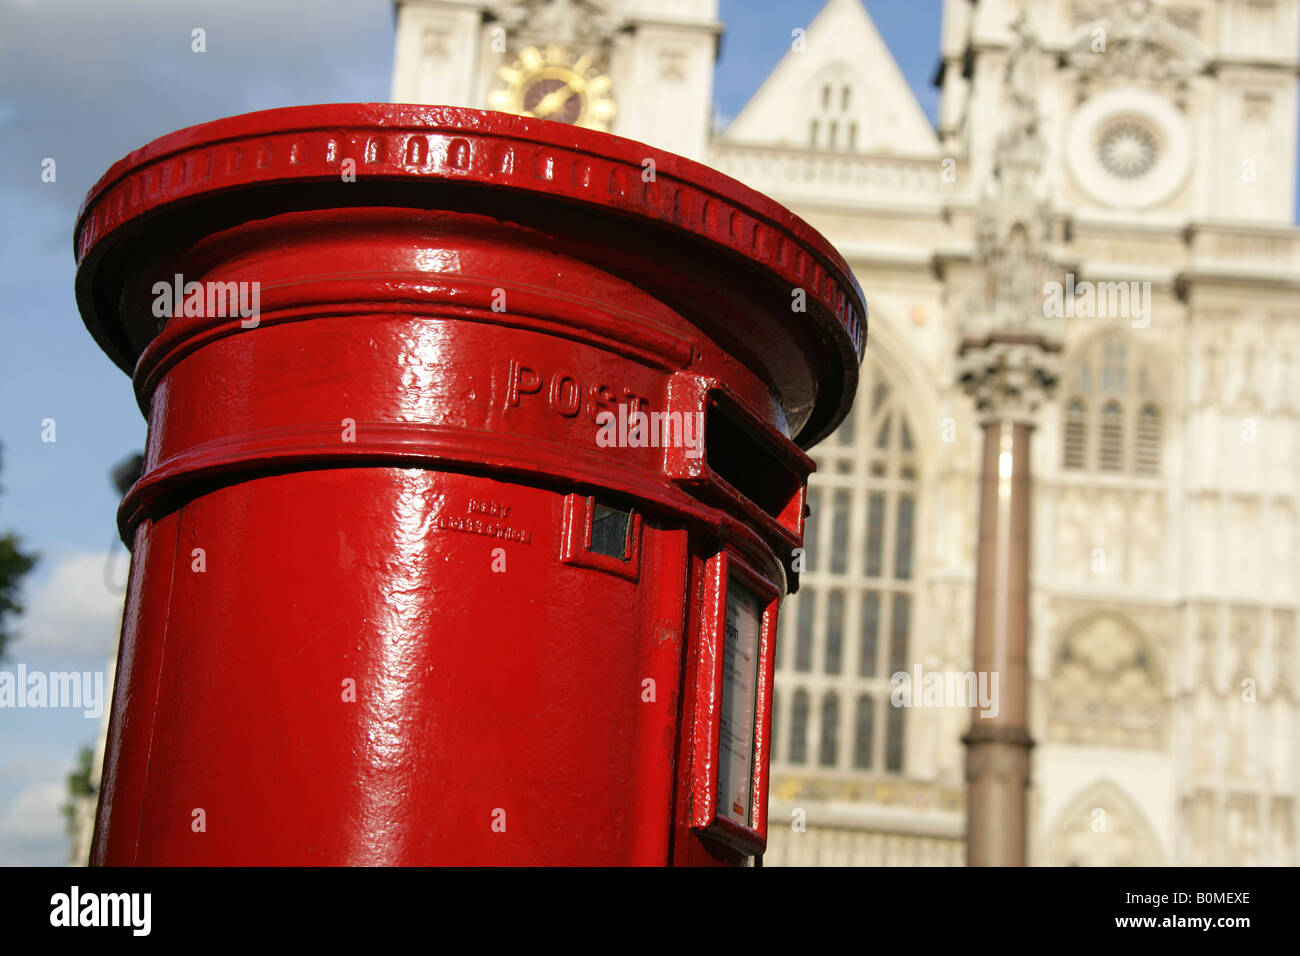 La città di Westminster, Inghilterra. Un rosso casella postale presso Tothill Street con il Westminster Abbey facciata occidentale in background. Foto Stock